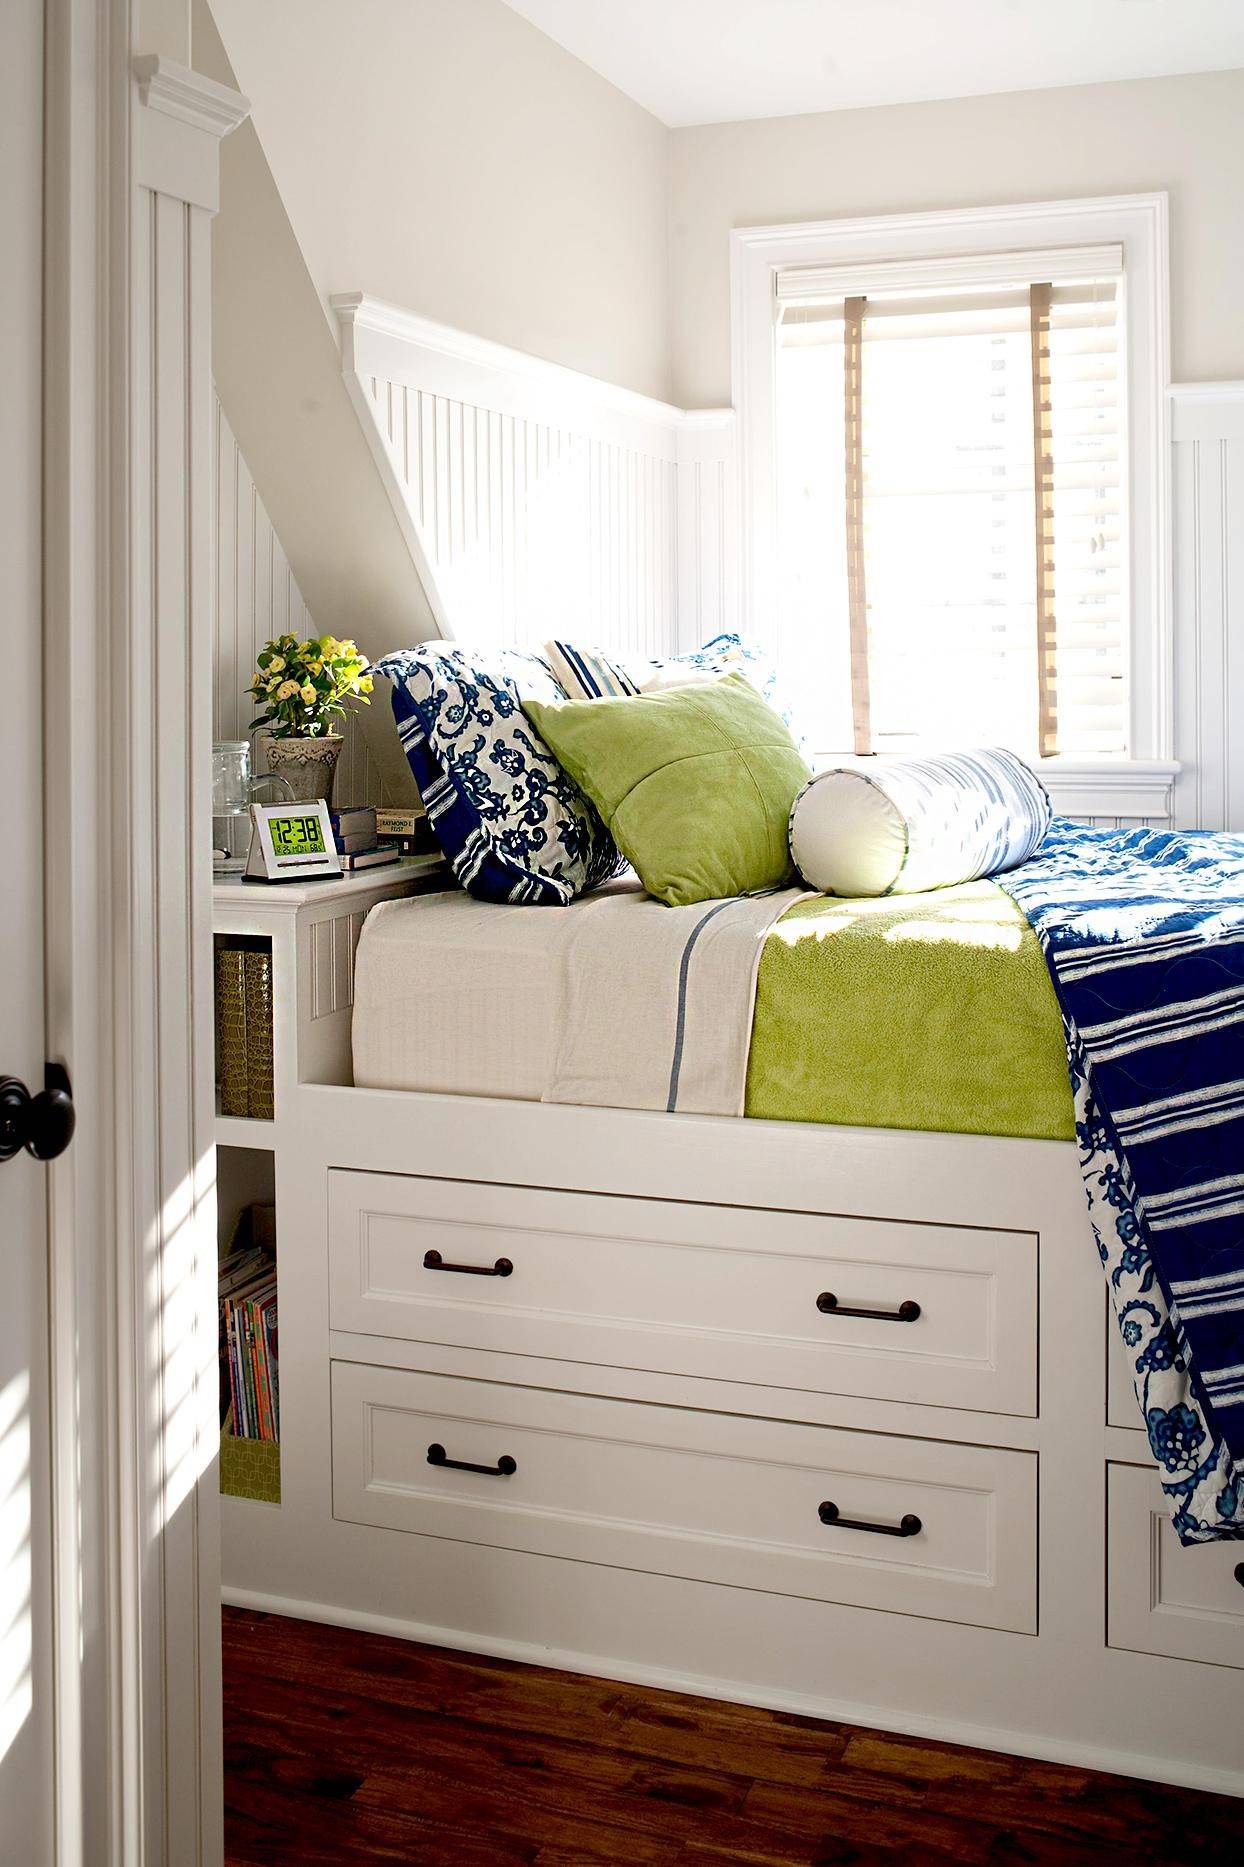 Ý tưởng thiết kế phòng ngủ độc đáo từ việc decor tường đầu giường - Ảnh 3.